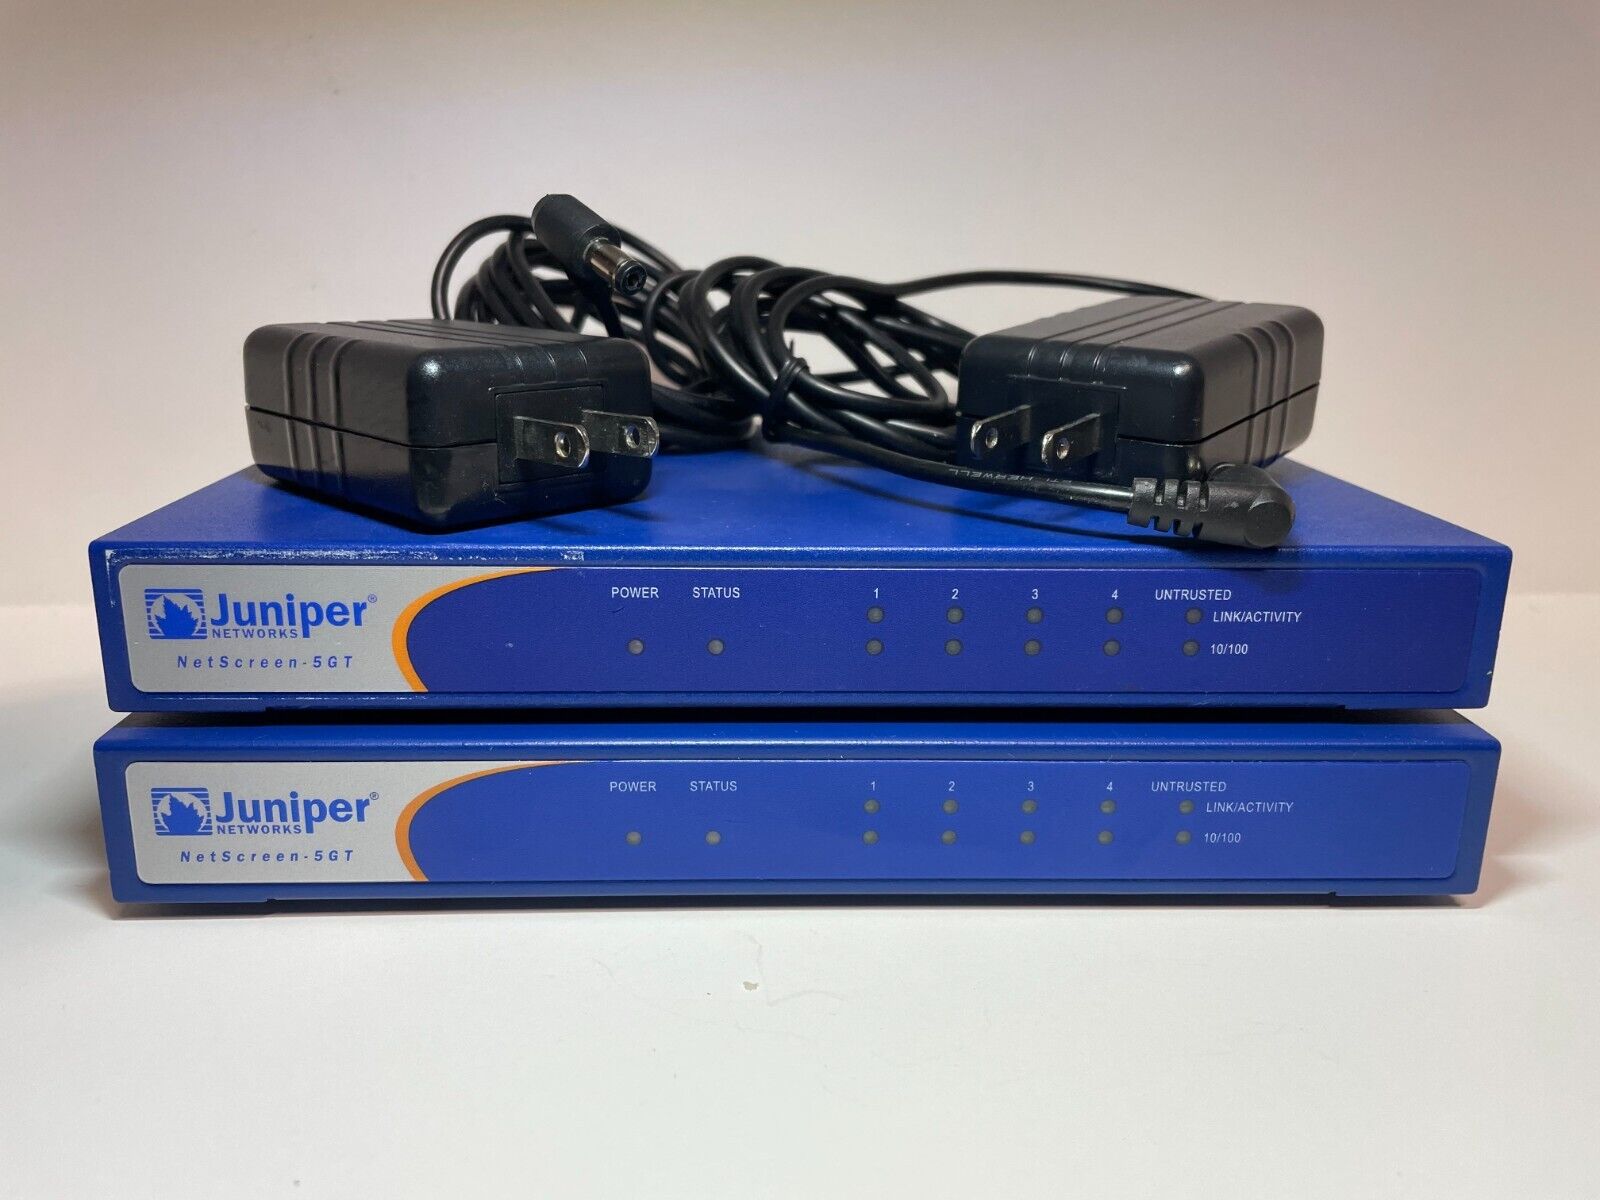 Juniper/Netscreen NS5GT FW/VPN appliance - InfoSec/Security Learning Device